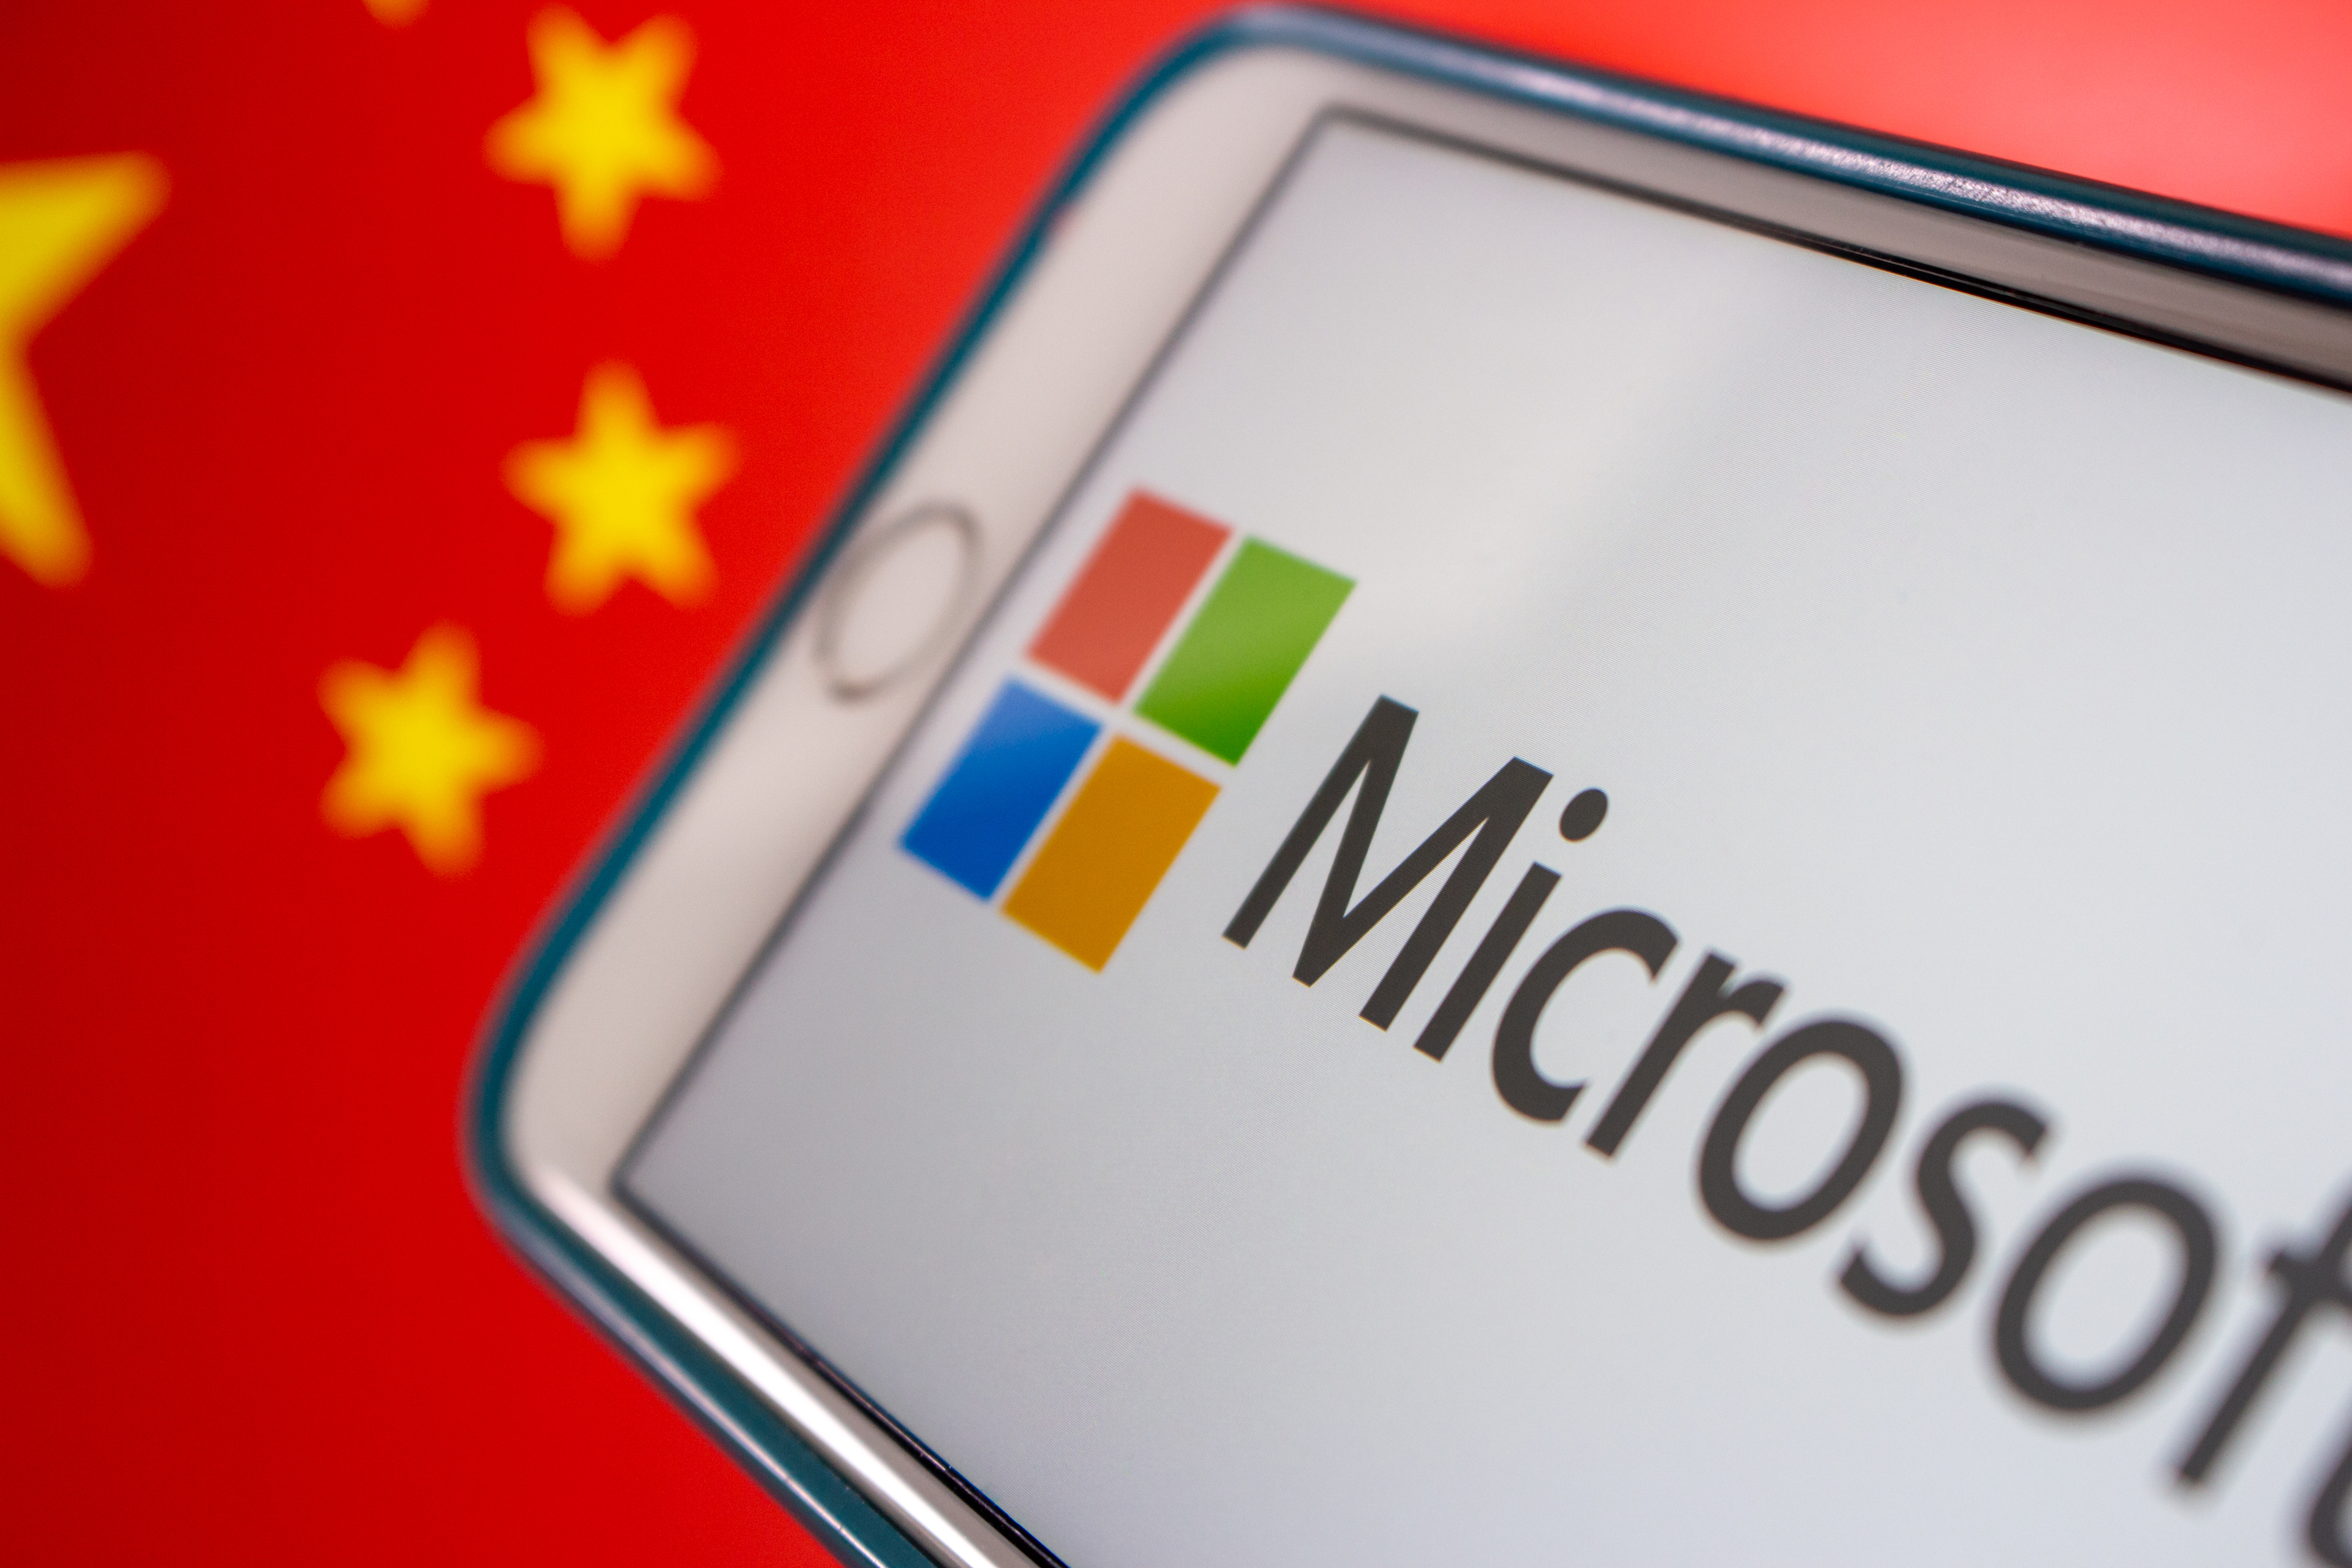 Microsoft mitiga el acceso de piratas informáticos a cuentas de correo electrónico del gobierno